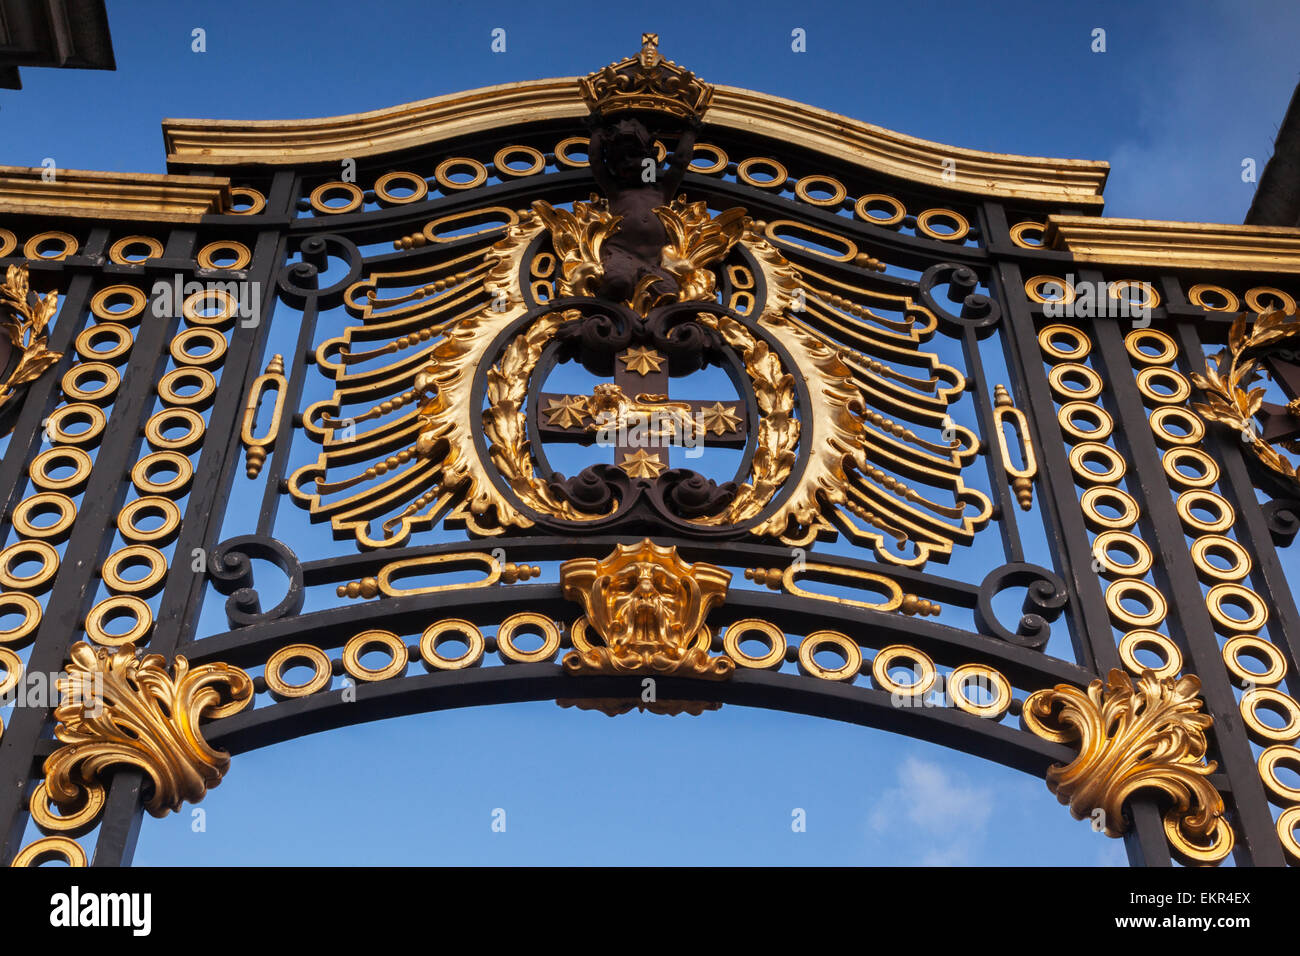 Detalle de una puerta de hierro fundido en el Palacio de Buckingham, Londres, Inglaterra. Foto de stock